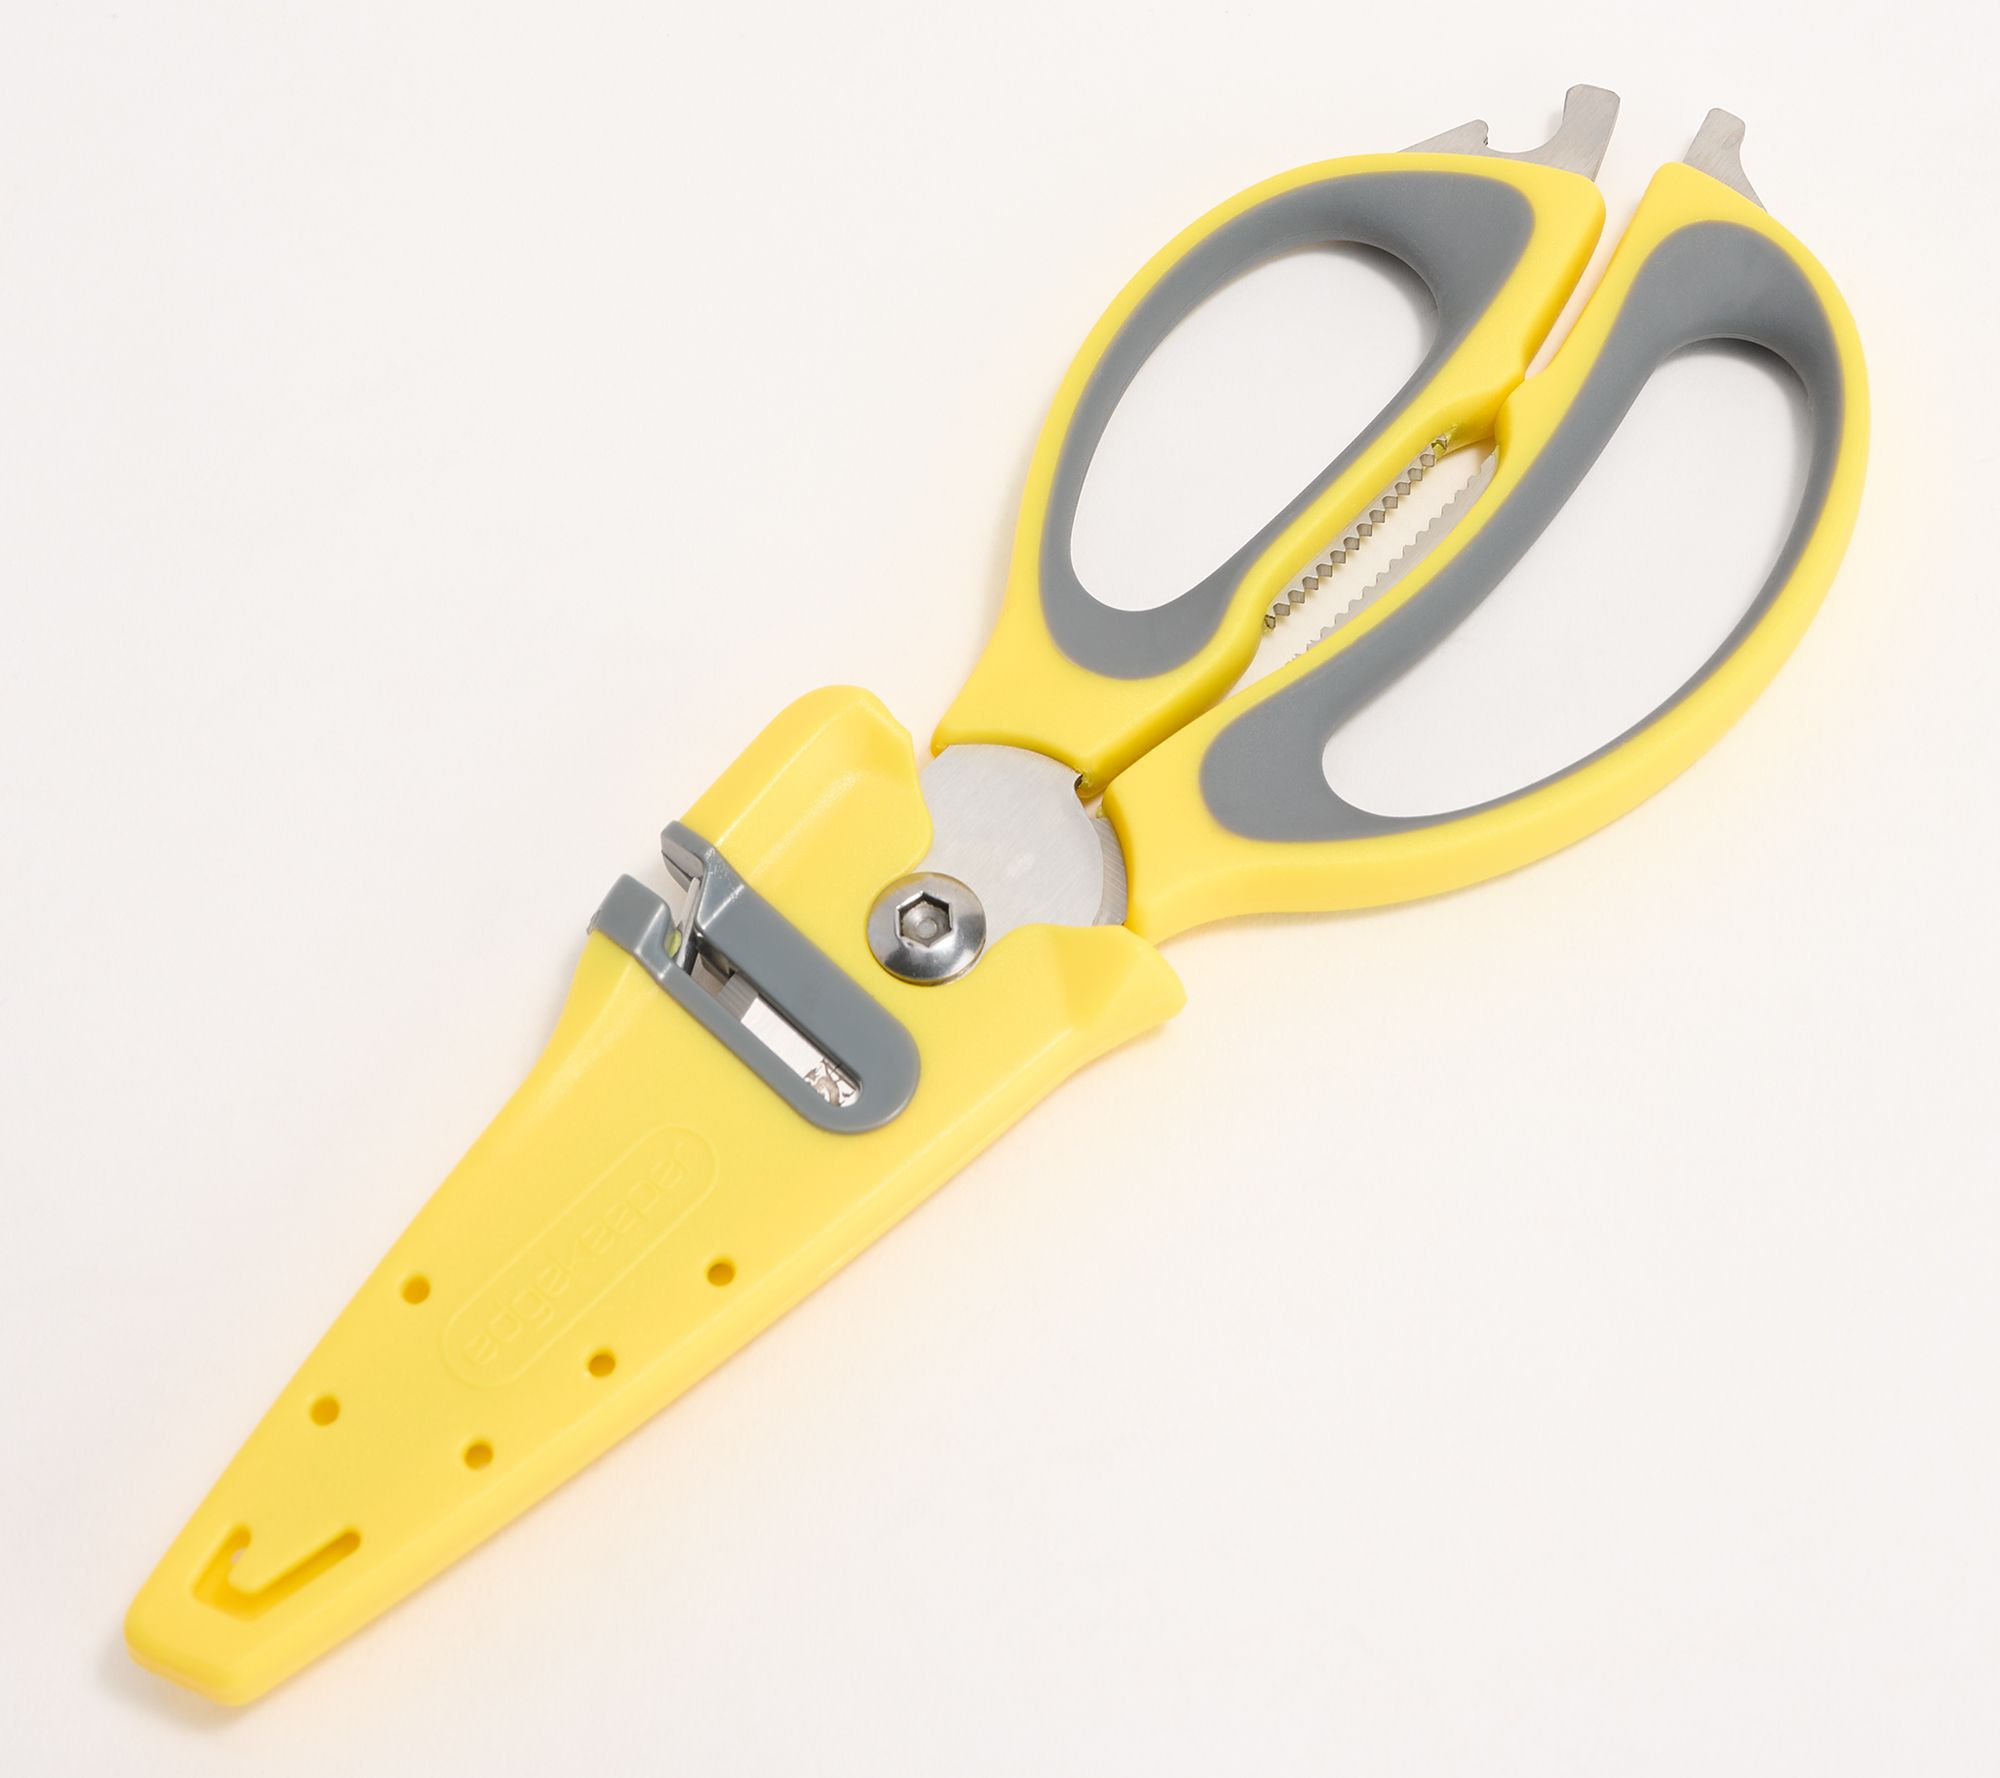 Sabatier Edgekeeper 5 in 1 Multi-Purpose Scissors, 9.5-Inch, Navy